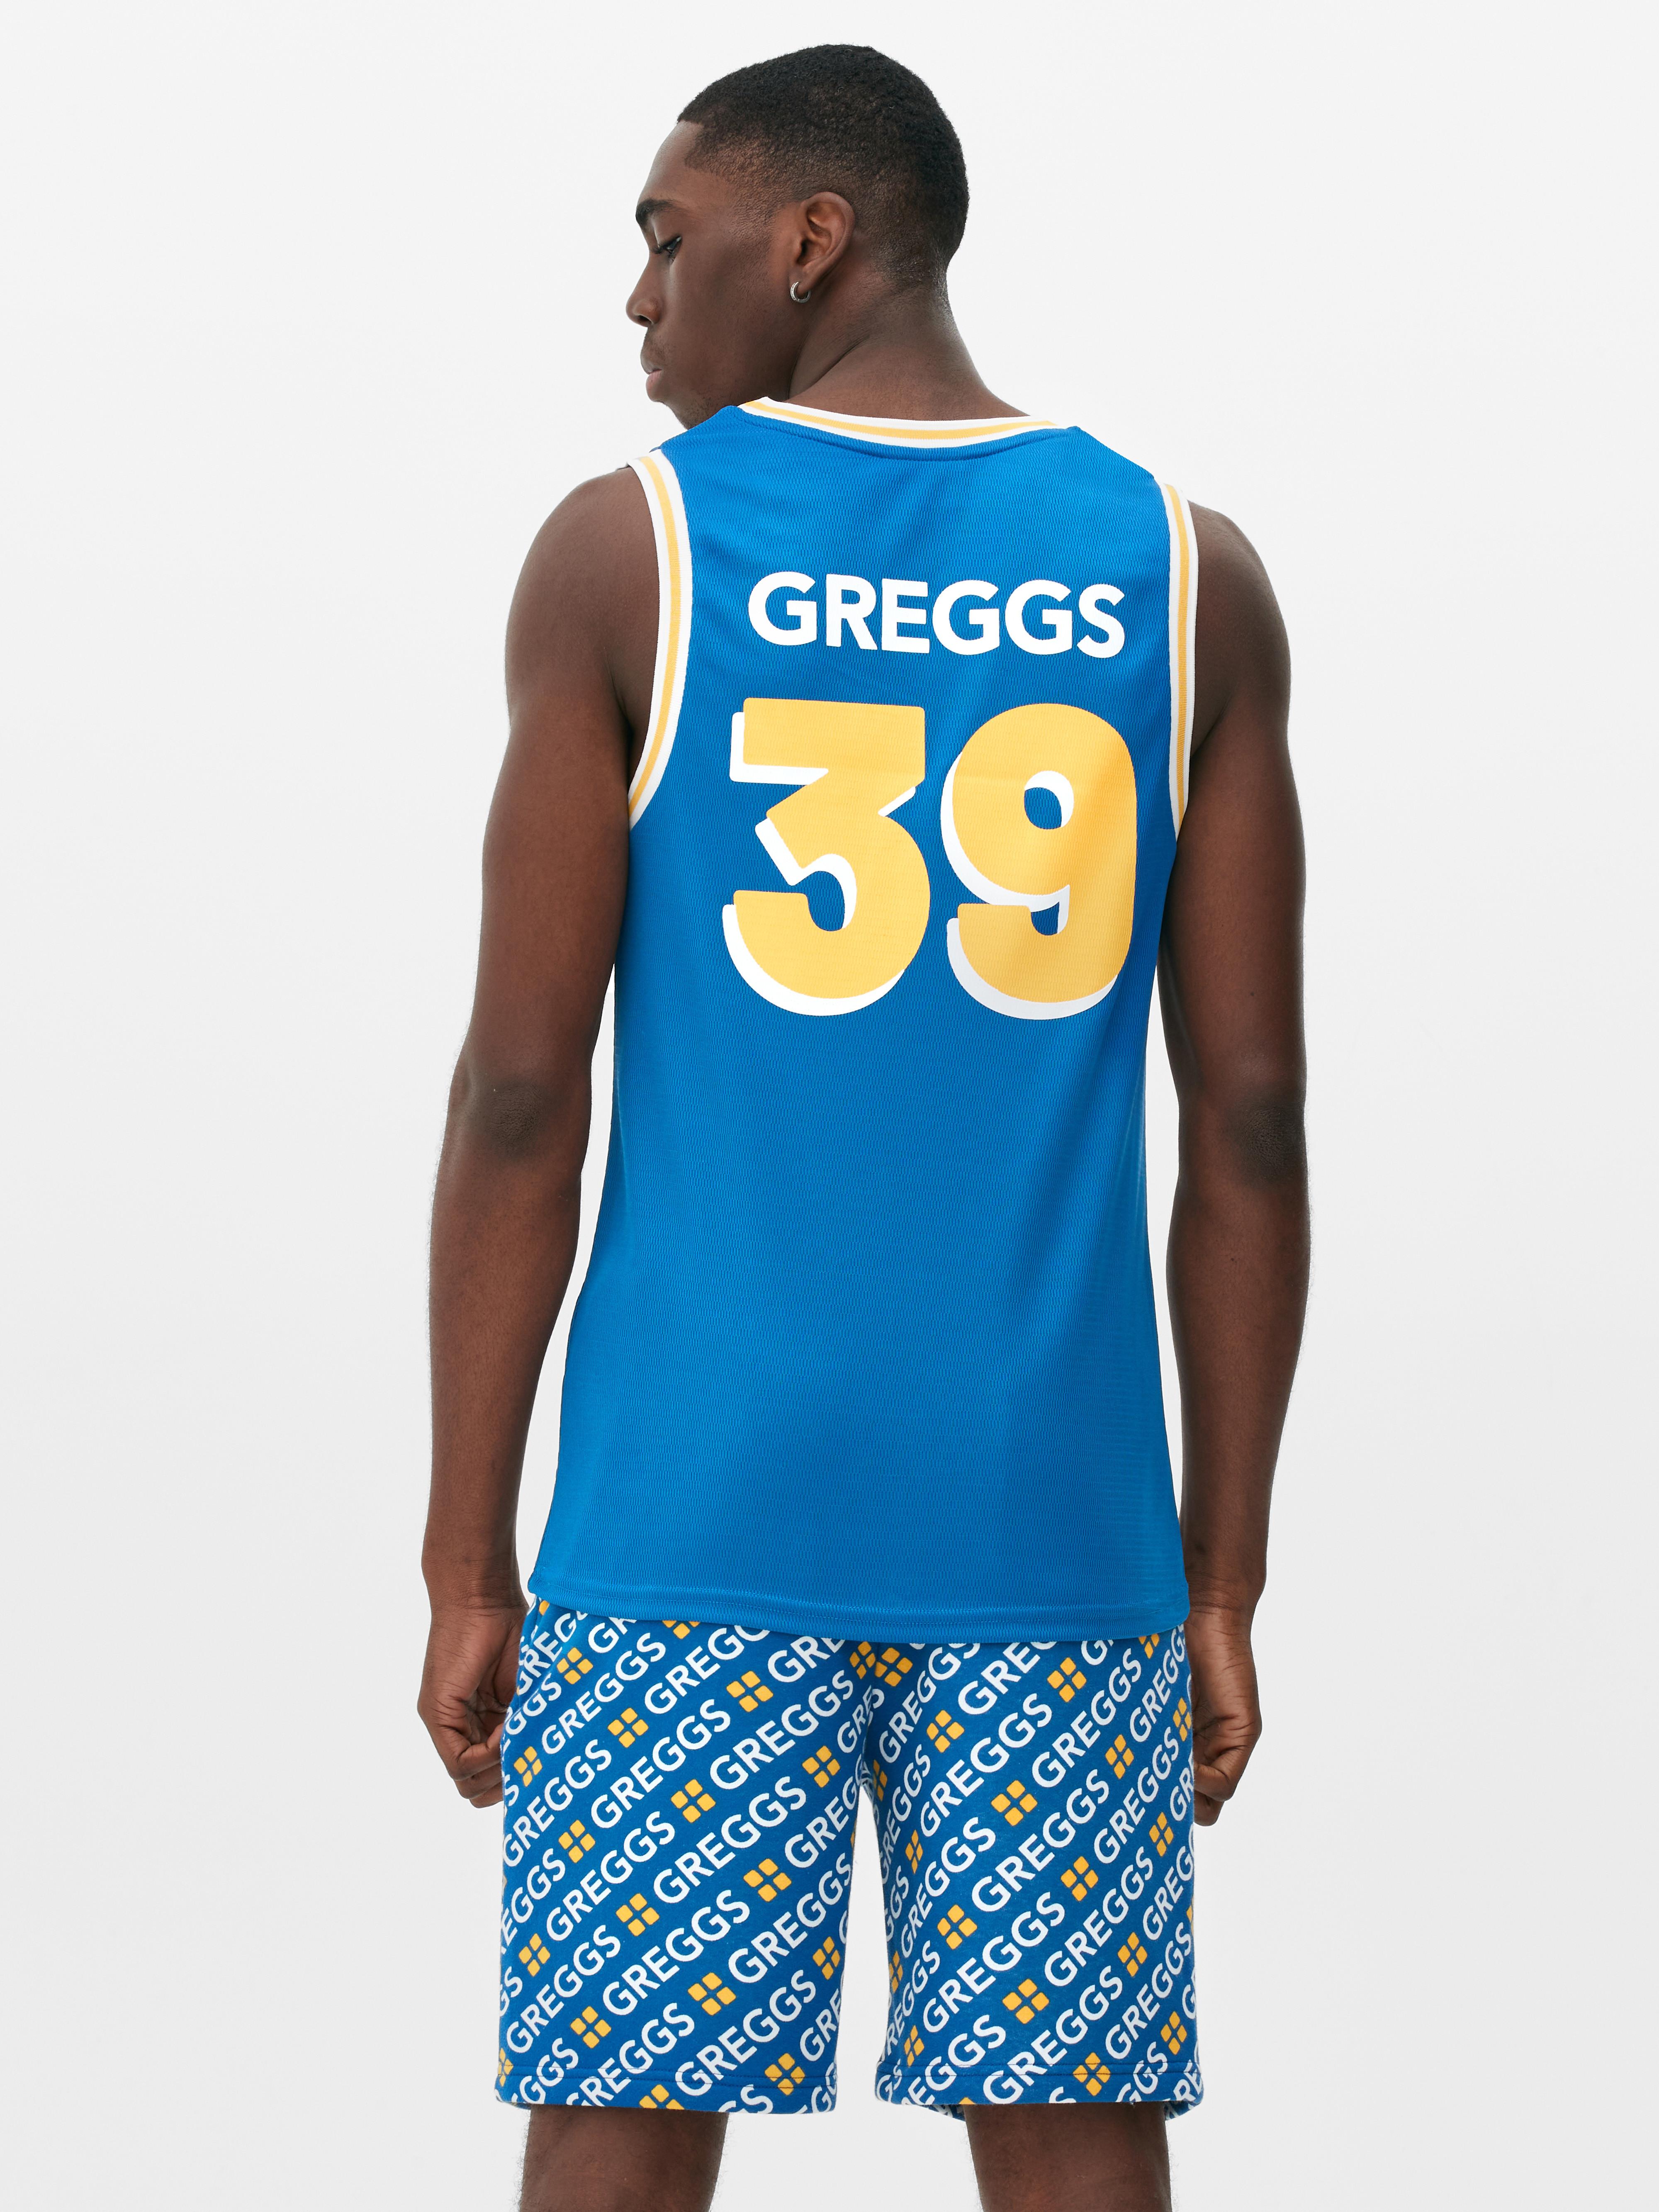 Greggs Basketball Vest